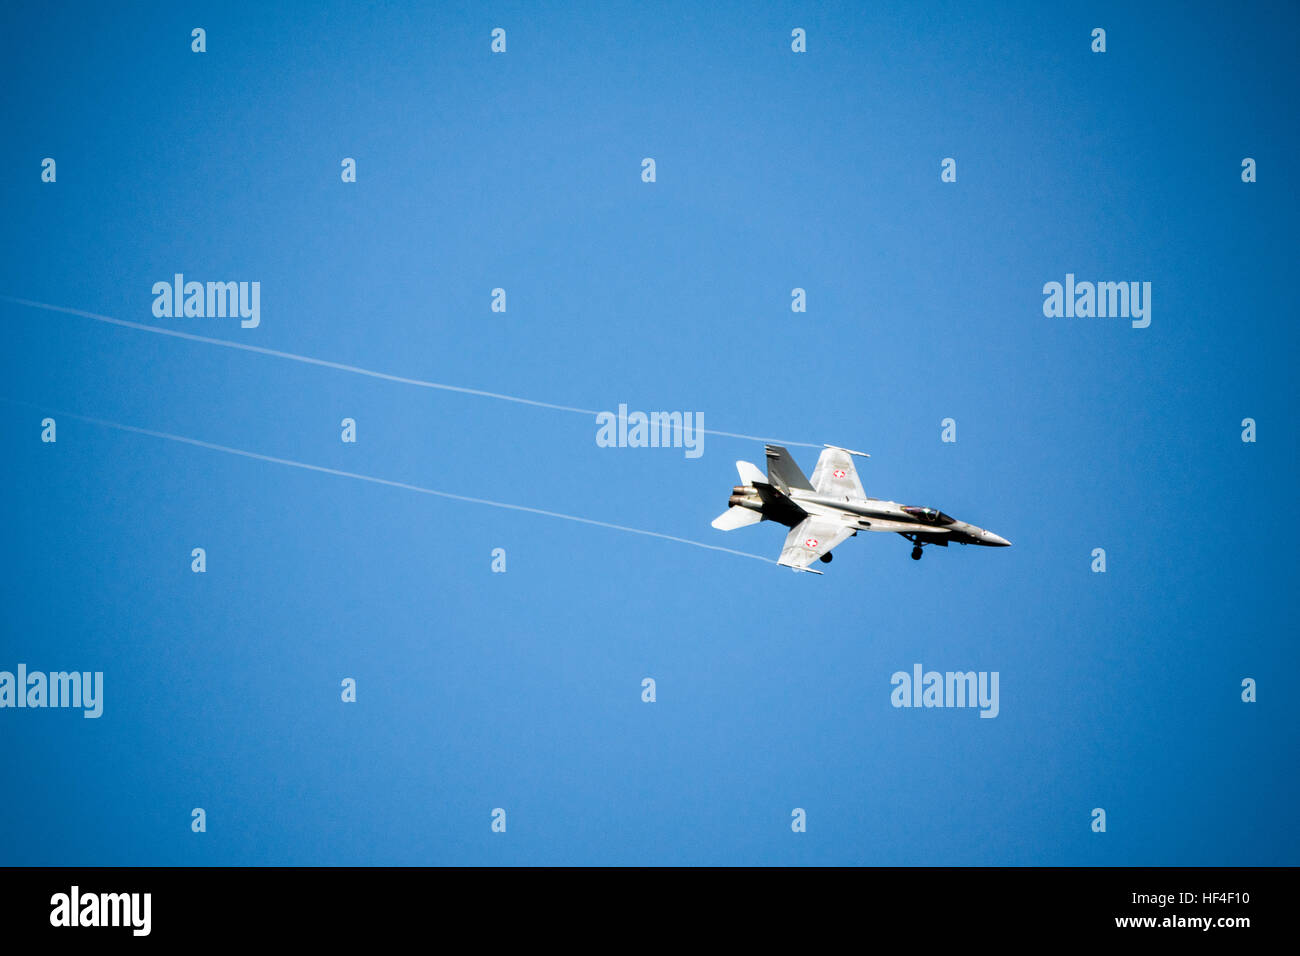 Swiss F-18 Hornet fighter aircraft Stock Photo